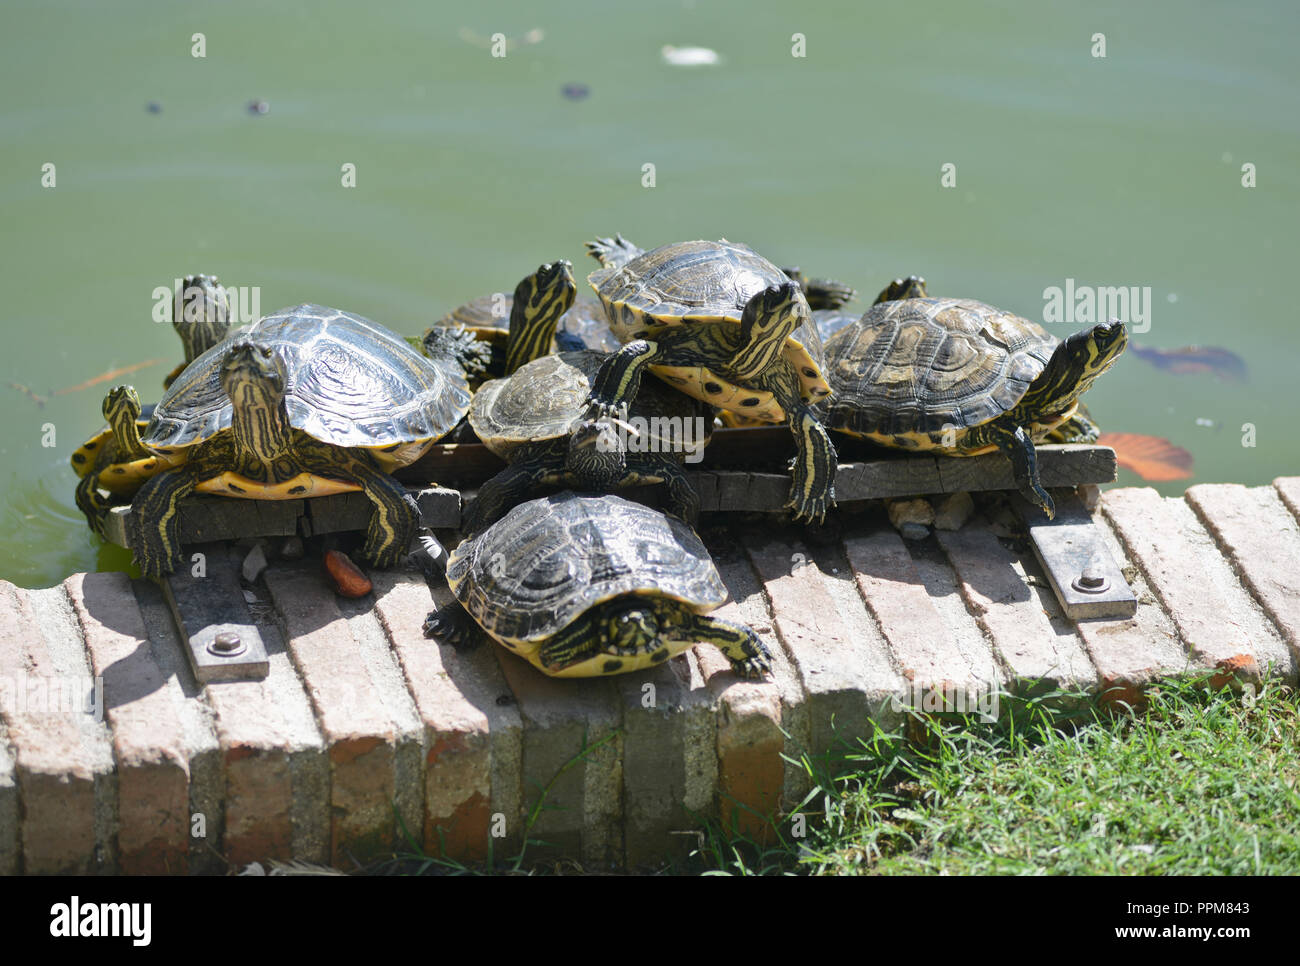 Turtles sunbathing. Buen Retiro Park - Parque del Buen Retiro, Madrid, Spain Stock Photo